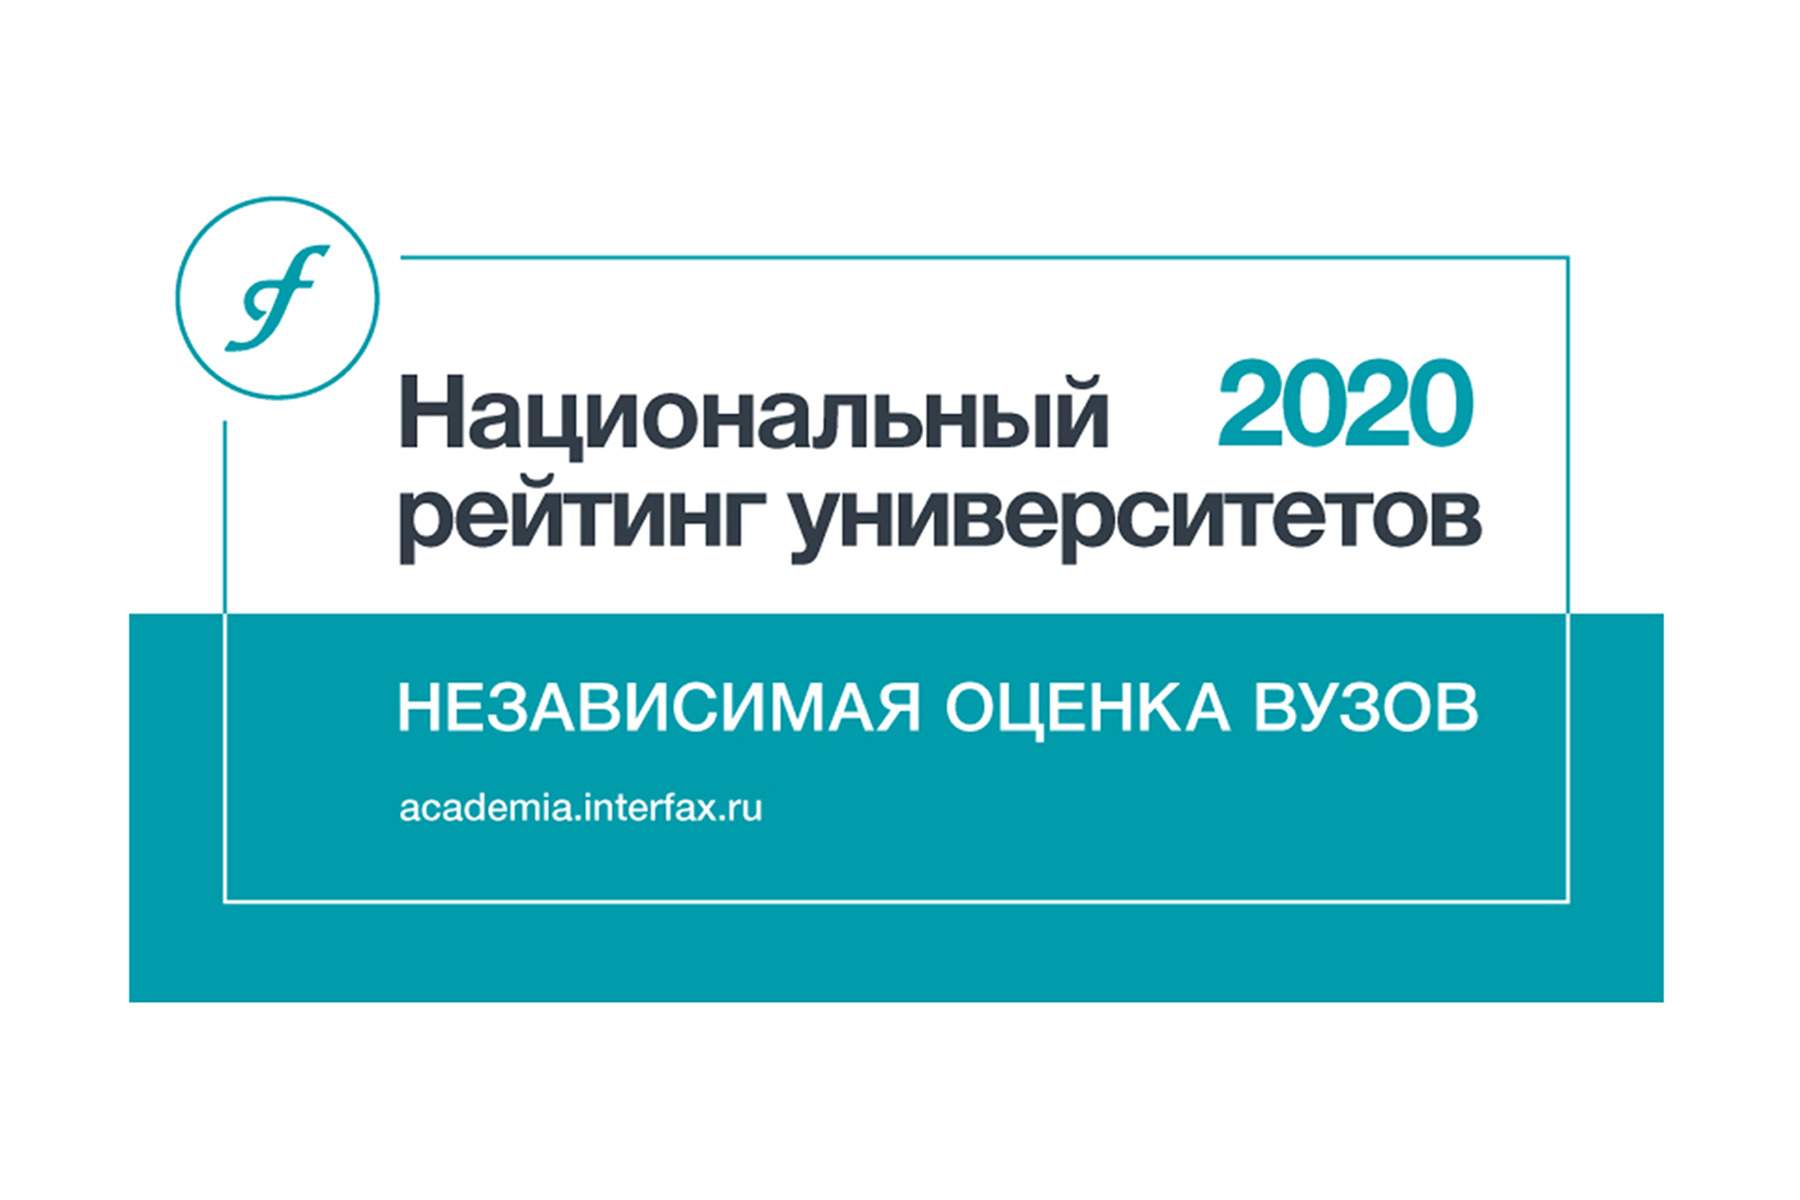 ВГУЭС — лидер образования в регионе по результатам Национального рейтинга университетов «Интерфакс» 2020